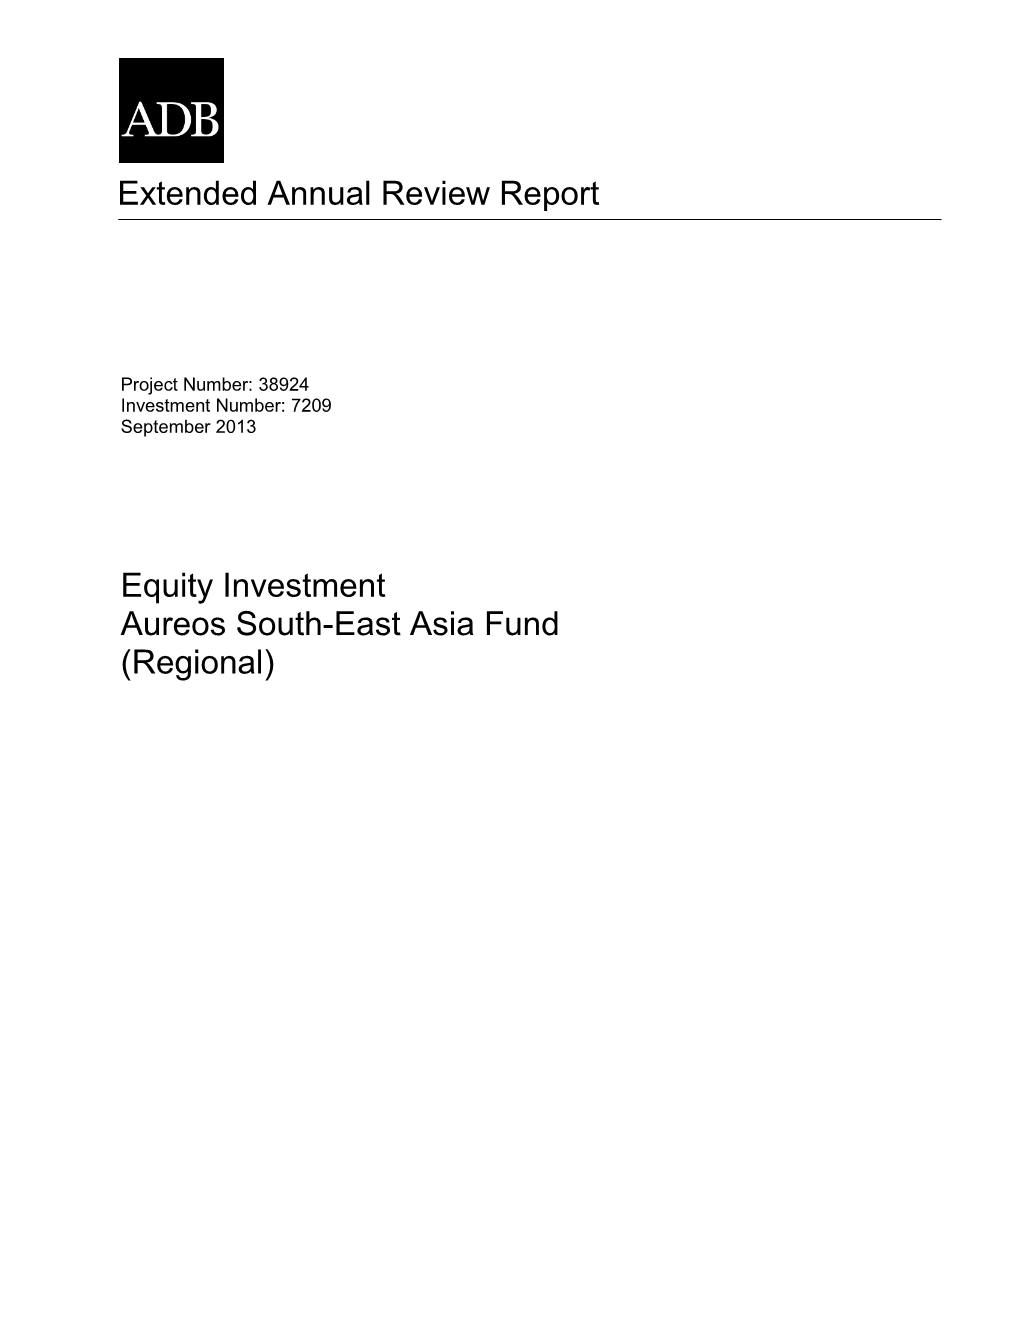 Aureos South-East Asia Fund (Regional)